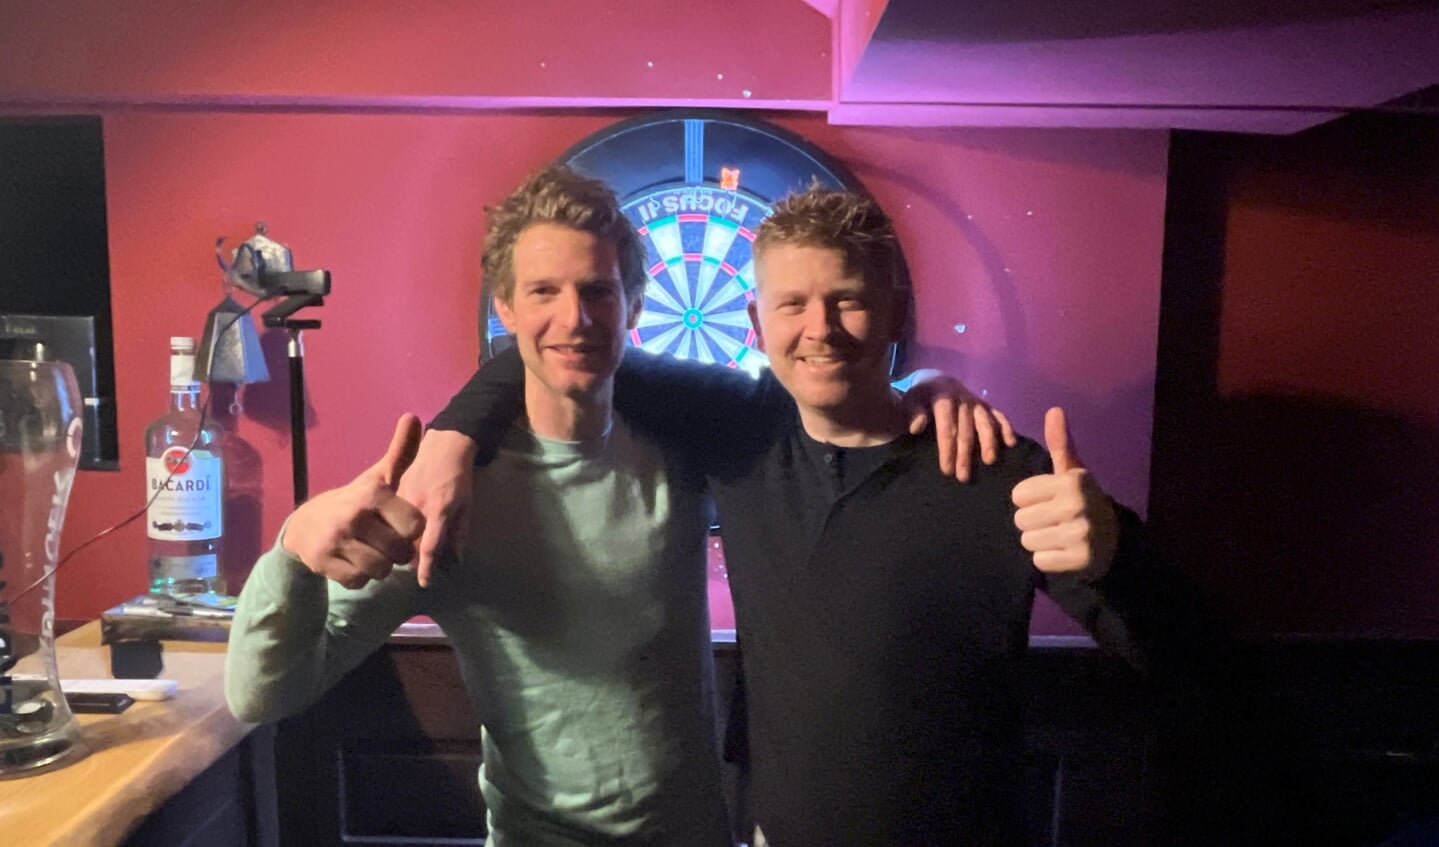 Majestic Five 2, bestaande uit André van de Bunt (links) en Dennis de Haas (rechts), won
afgelopen vrijdag de openingswedstrijd tegen 't Kreugje 1 met 5-1.